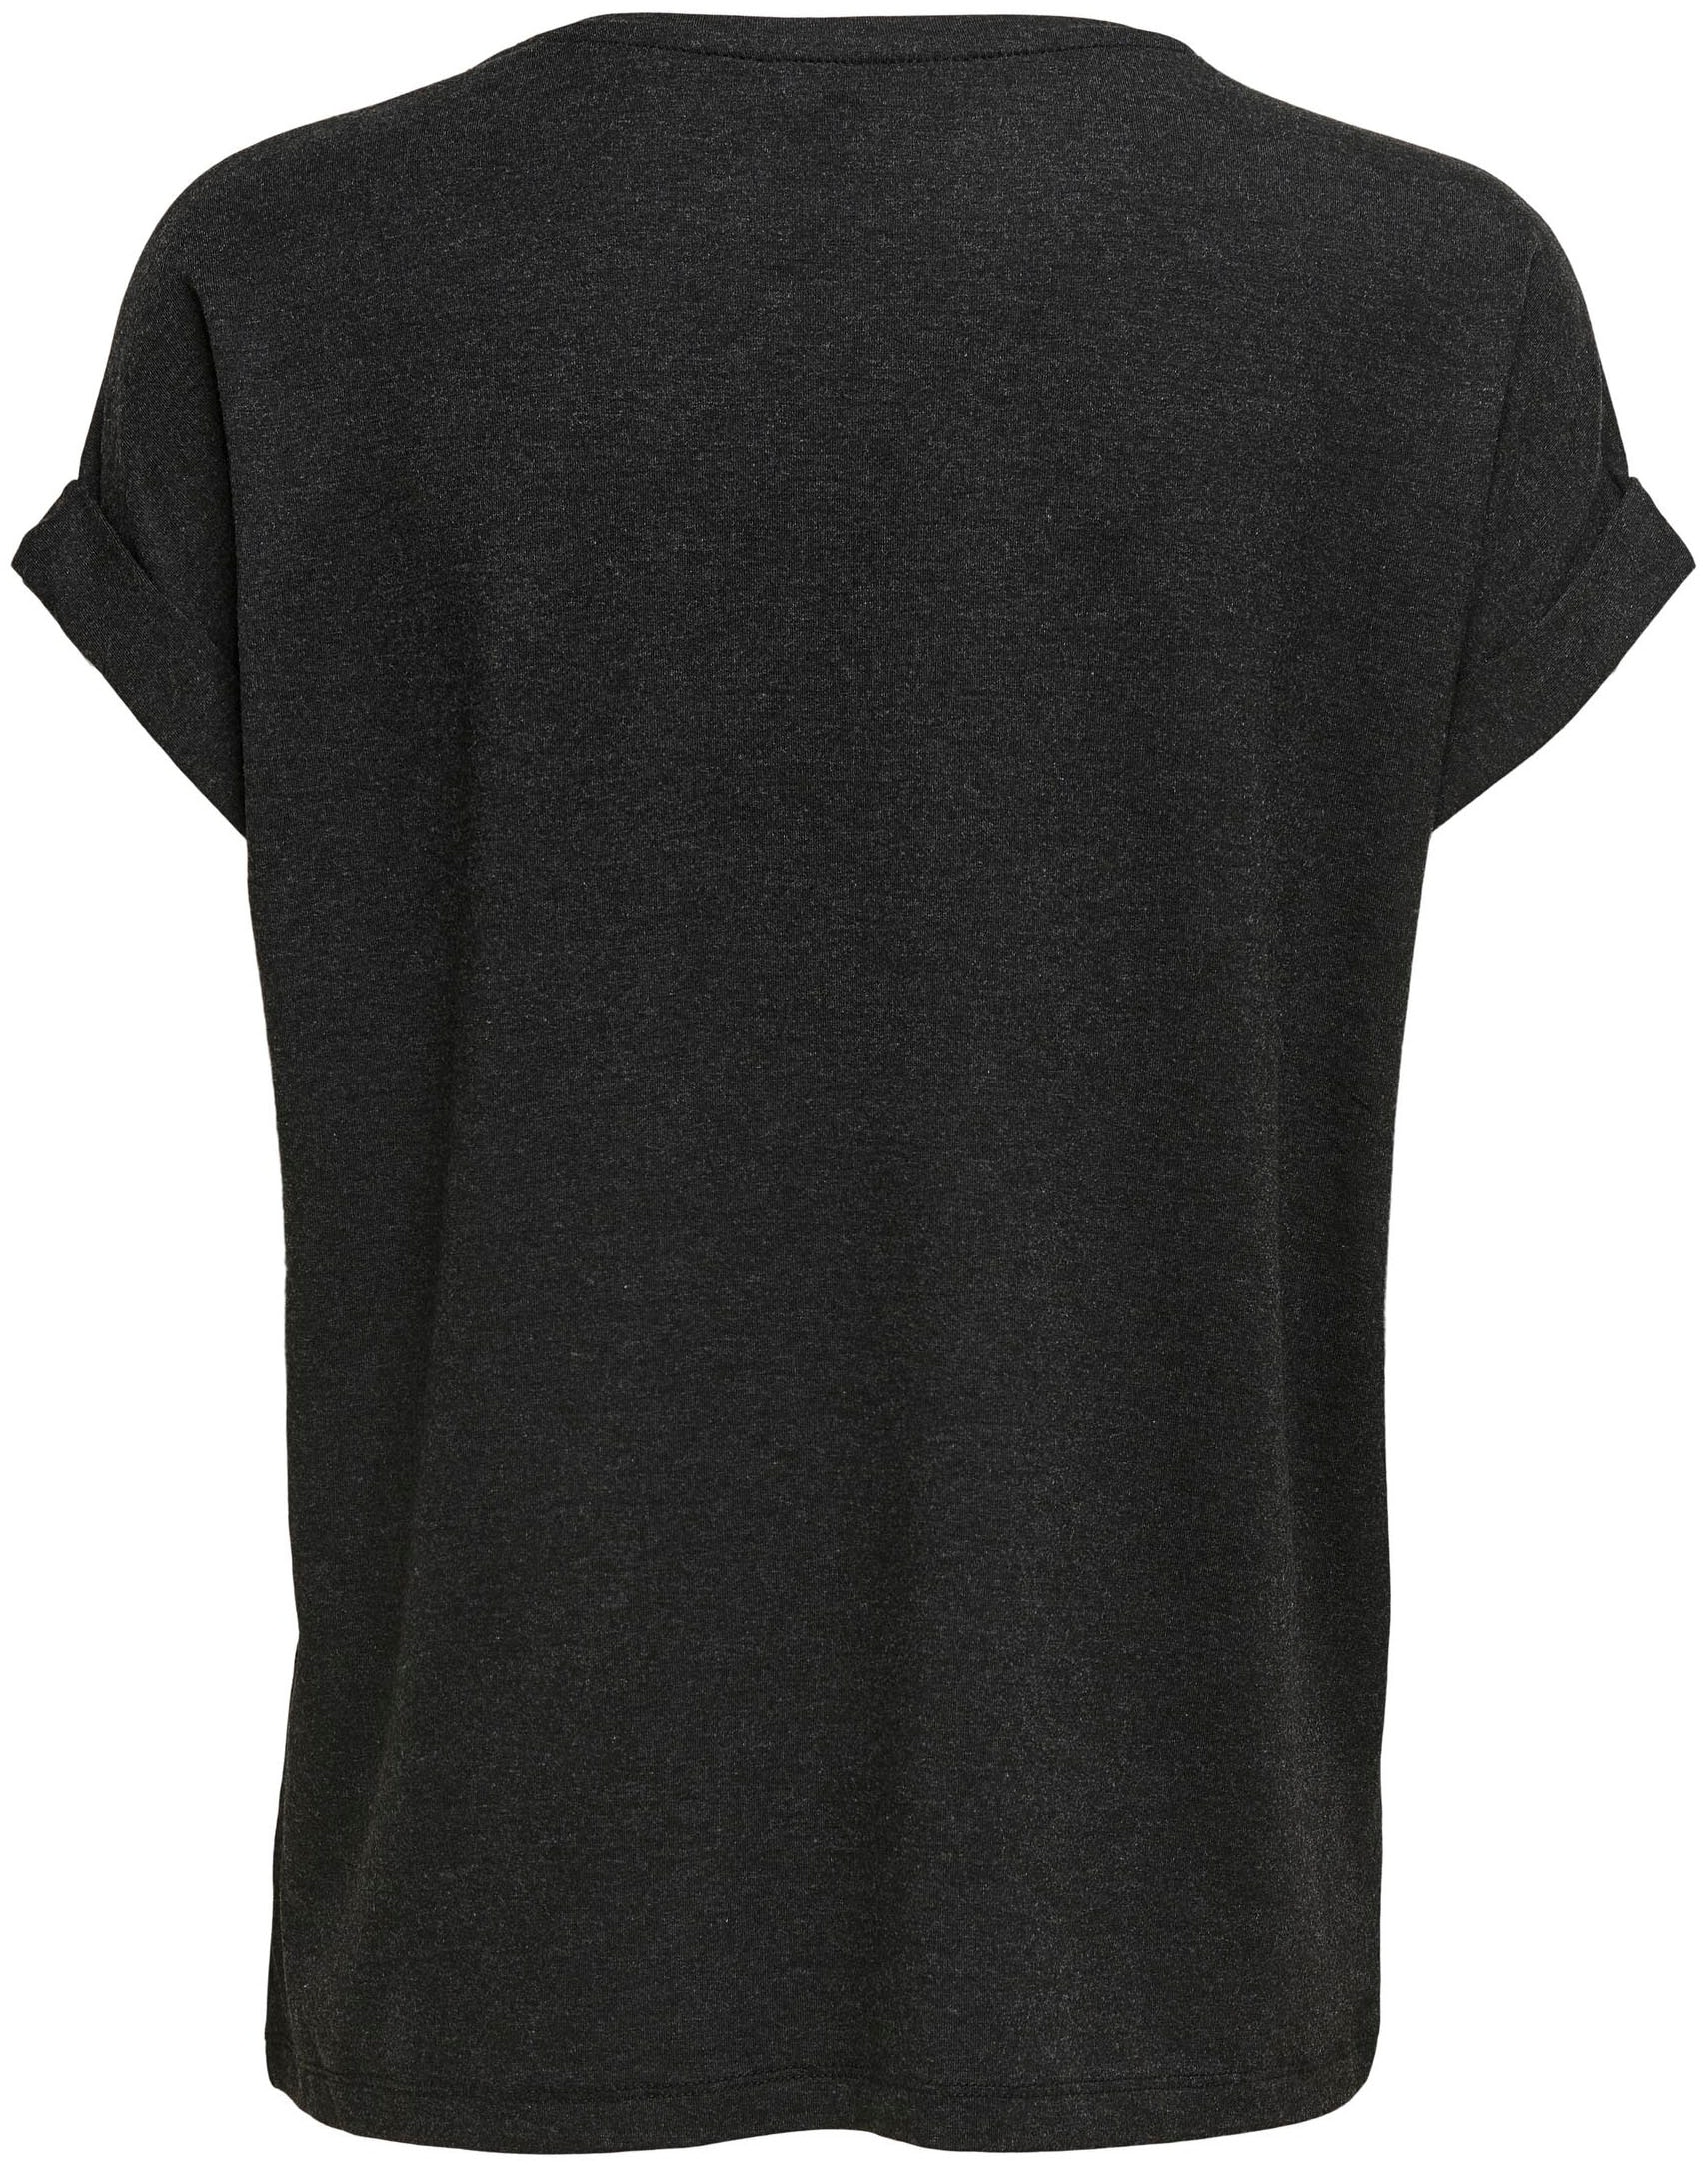 Aufschlag »ONLMOSTER«, mit Arm am Only kaufen günstig T-Shirt